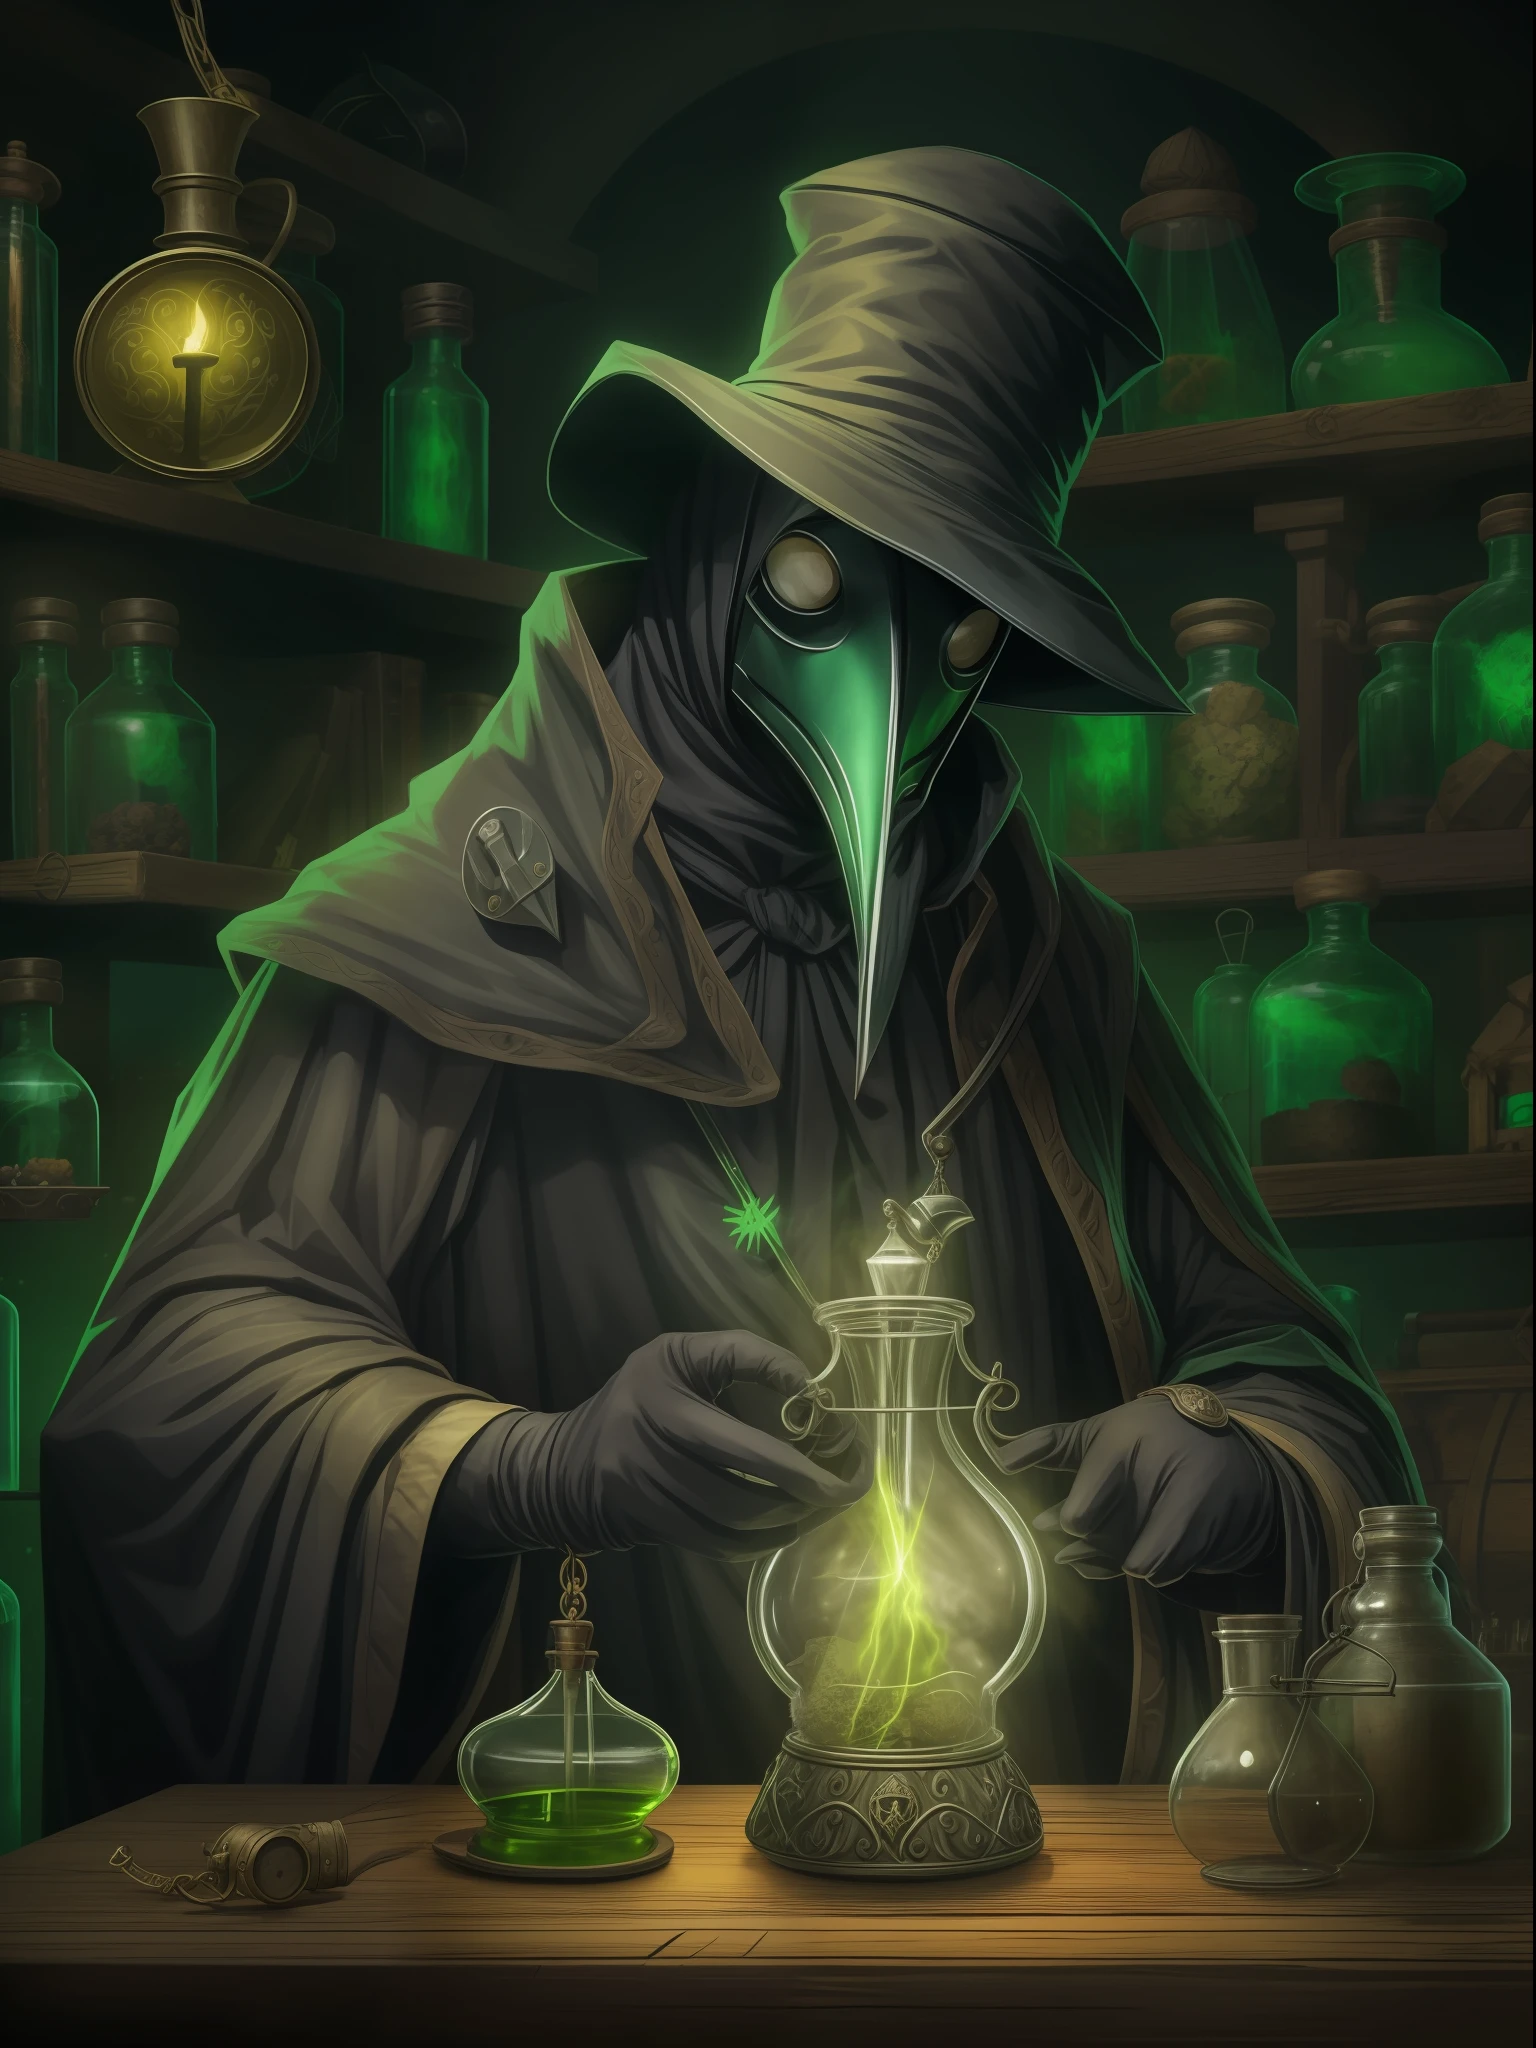 "Ein Pestdoktor mit dunkler Maske und uraltem Kostüm, Er hält einen mysteriösen Trank in seinen behandschuhten Händen, in einem dunklen und rätselhaften Labor. Im Hintergrund, eine unheimliche Aura aus leuchtendem Grün und giftiger Farbe, Ausstrahlende Lichtstrahlen. An deiner Seite, Eine kleine grüne Hausmaus, Neugierig beobachten."